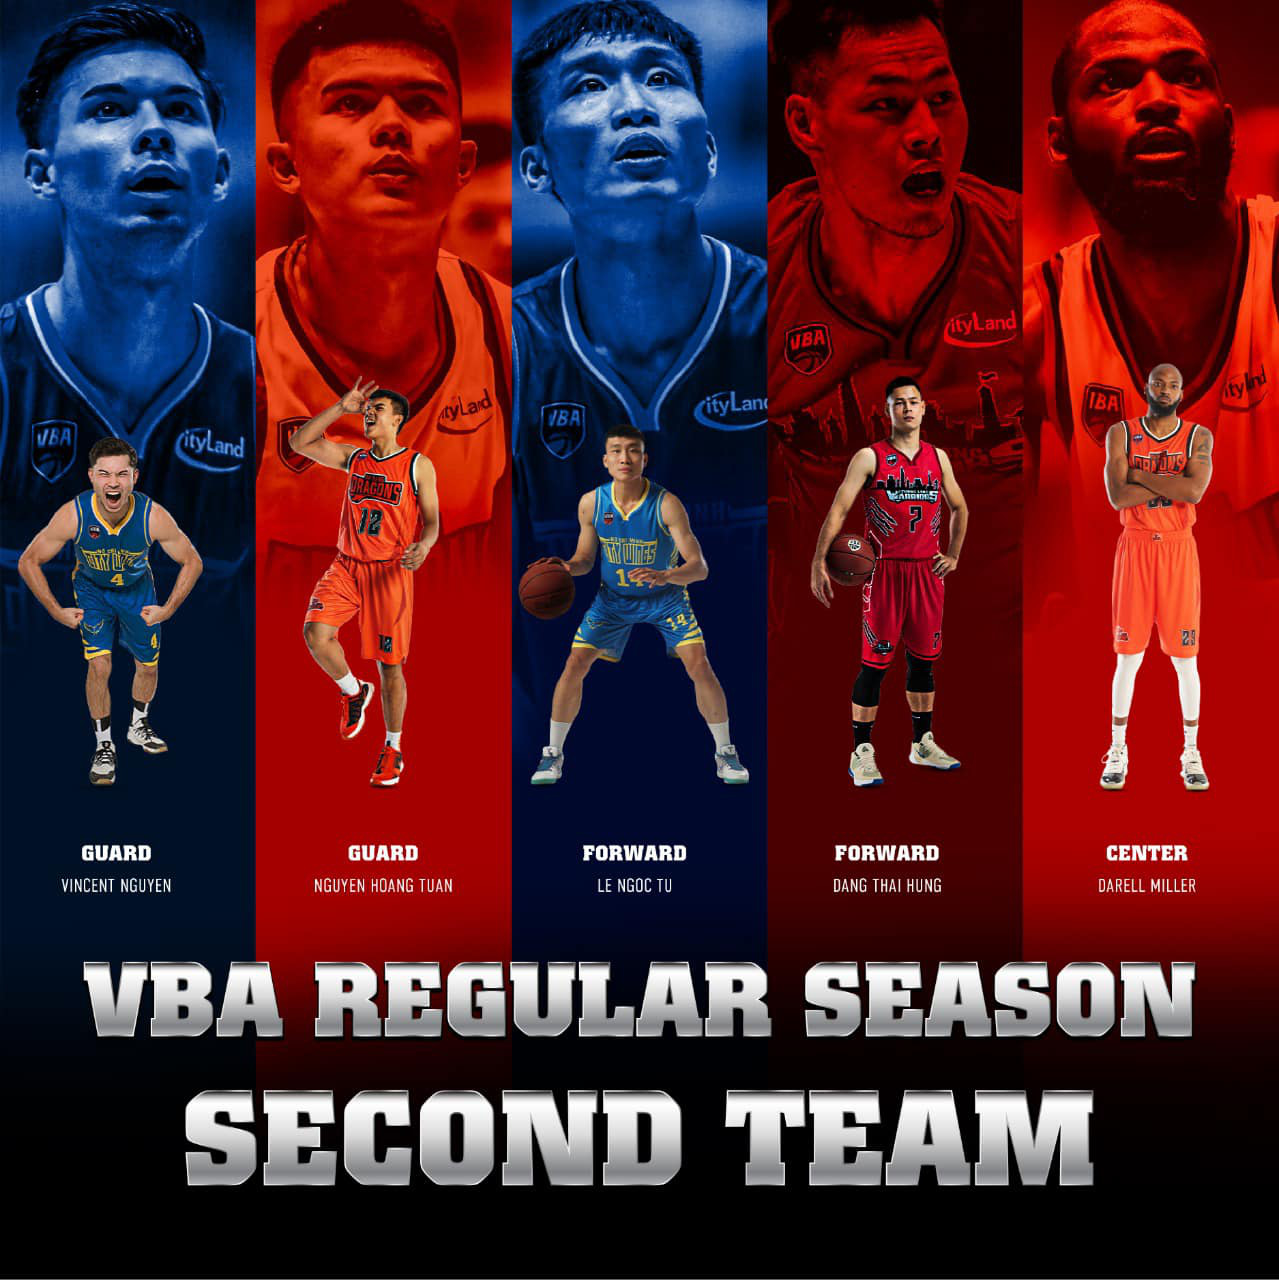 VBA công bố đội hình tiêu biểu Regular Season và Defensive Team: Mike Bell giữ vững phong độ, nội binh tiến bộ rõ rệt - Ảnh 3.